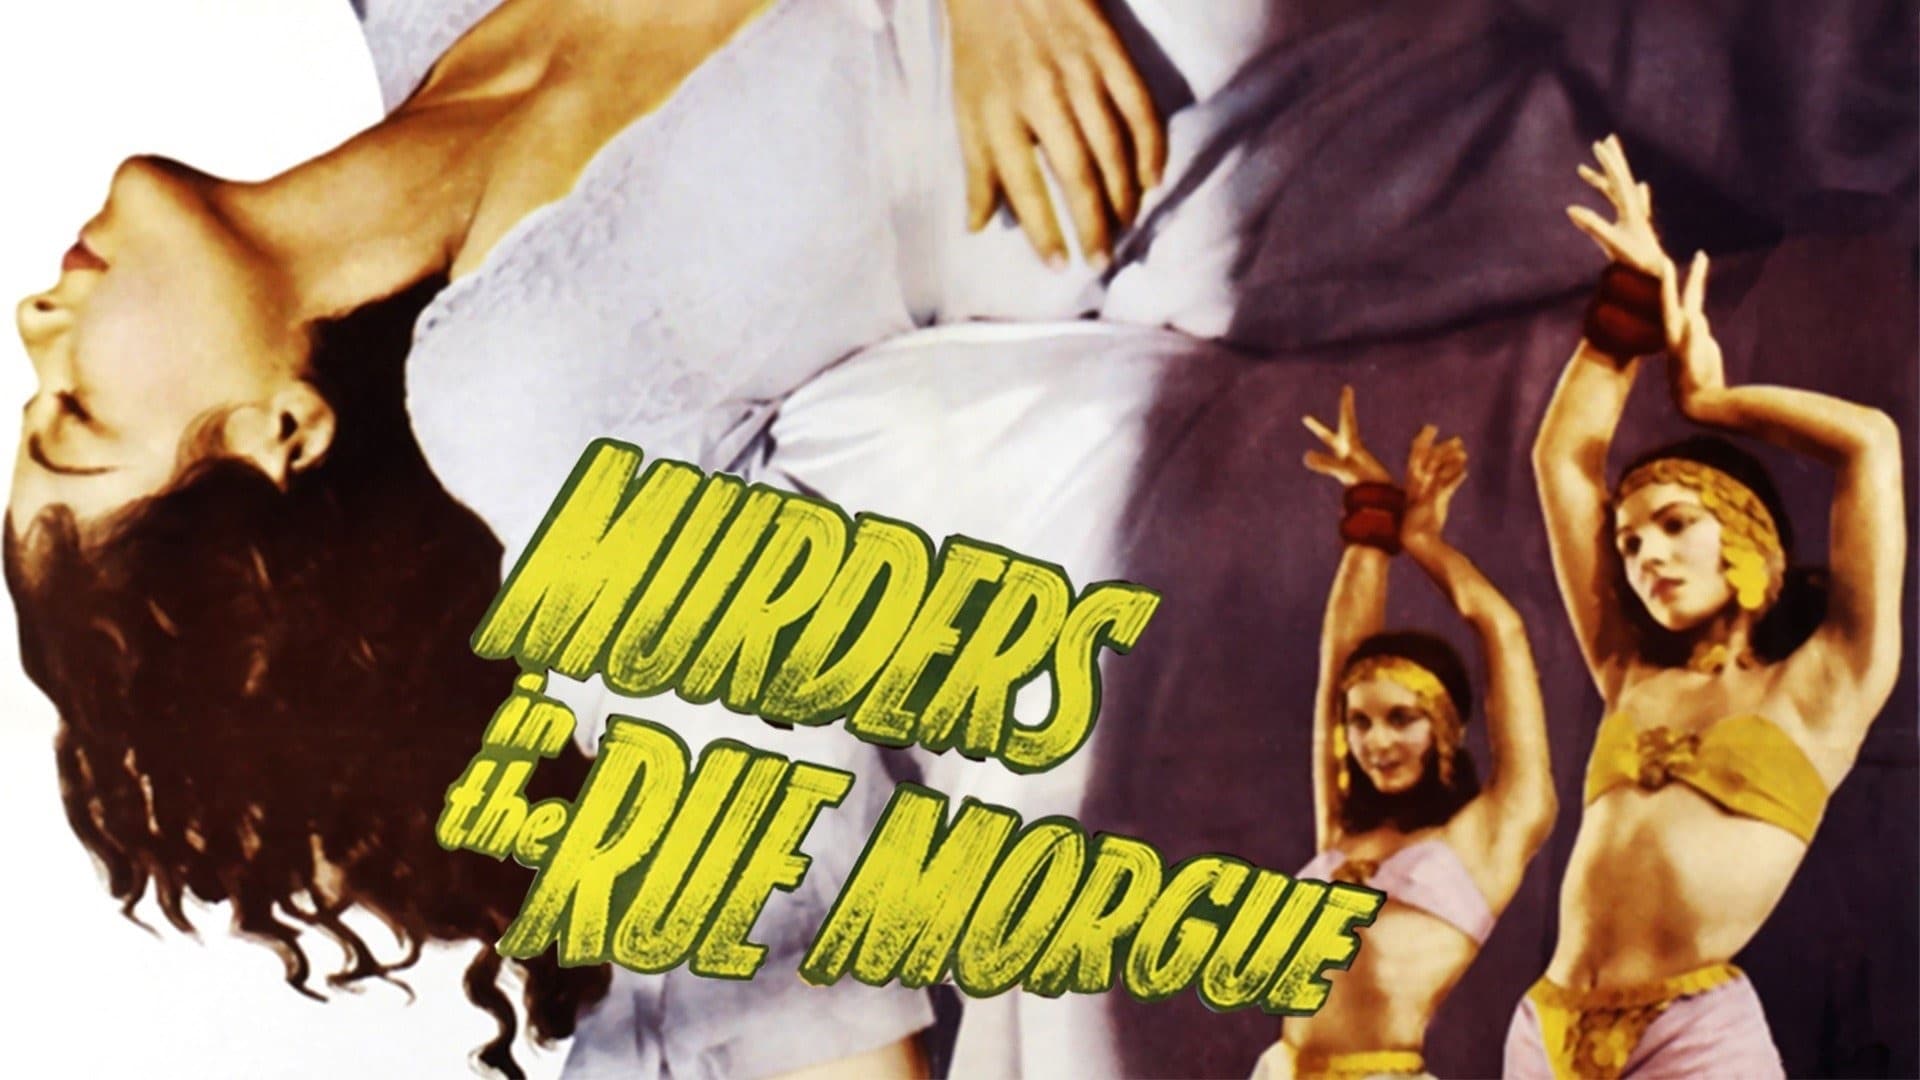 Mord in der Rue Morgue (1932)